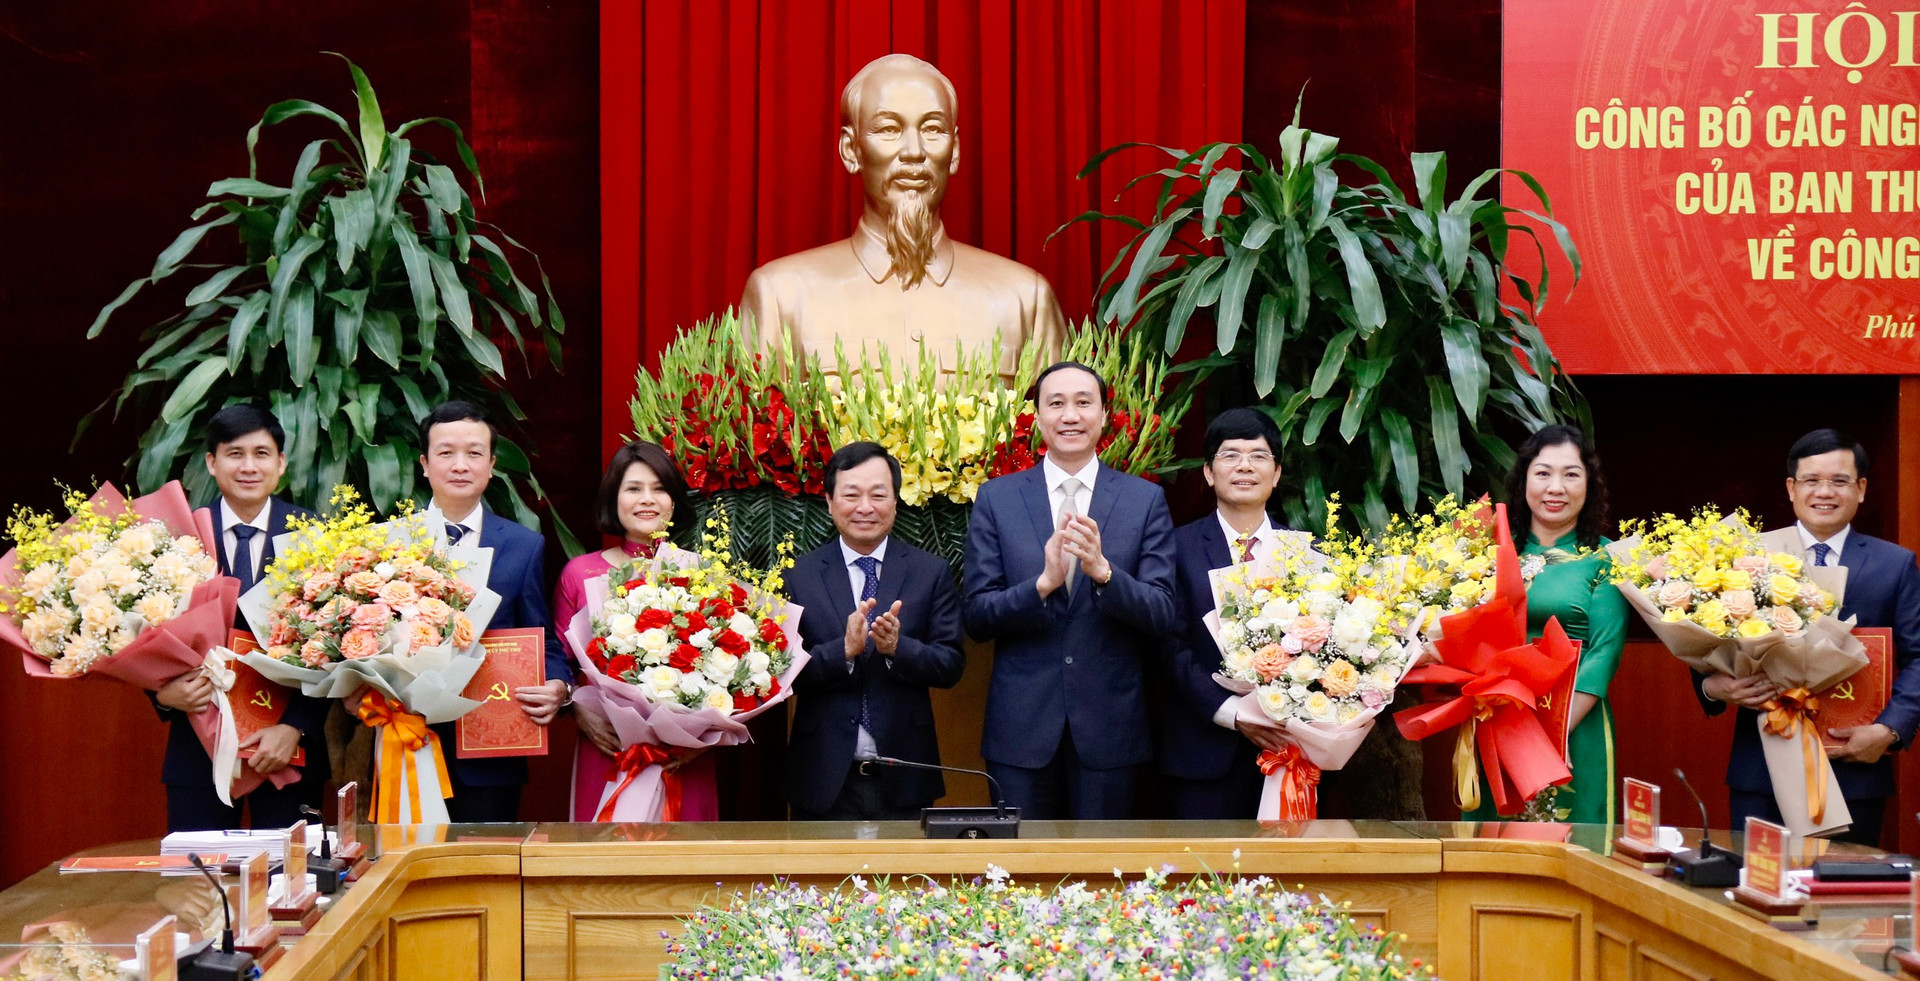 Ông Bùi Văn Quang và ông Phùng Khánh Tài tặng hoa chúc mừng các đồng chí được điều động, bổ nhiệm .